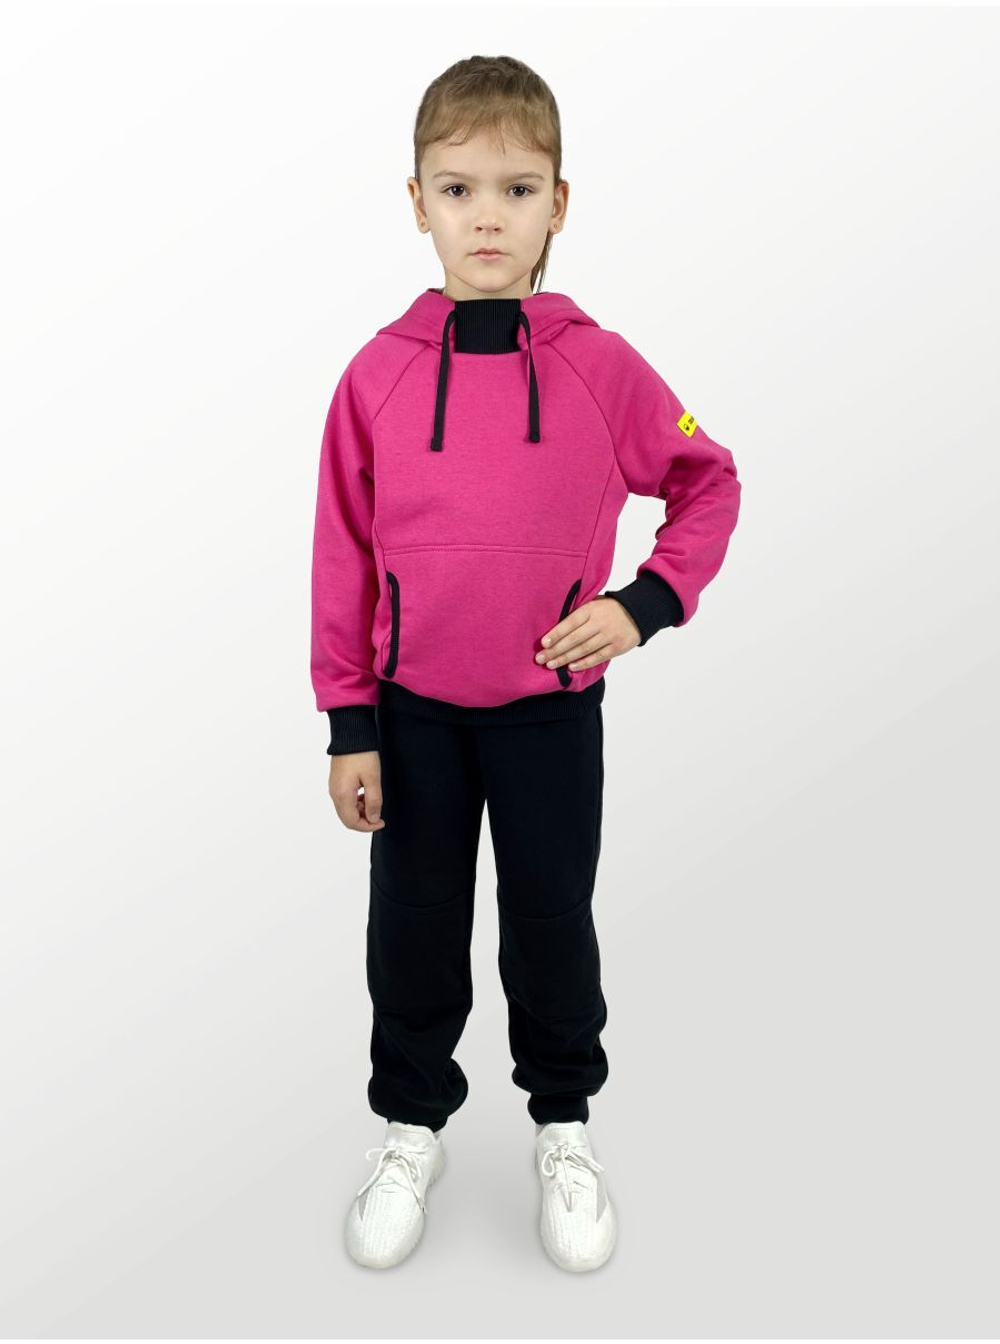 Худи для детей, модель №4, с капюшоном, рост 116 см, фуксия